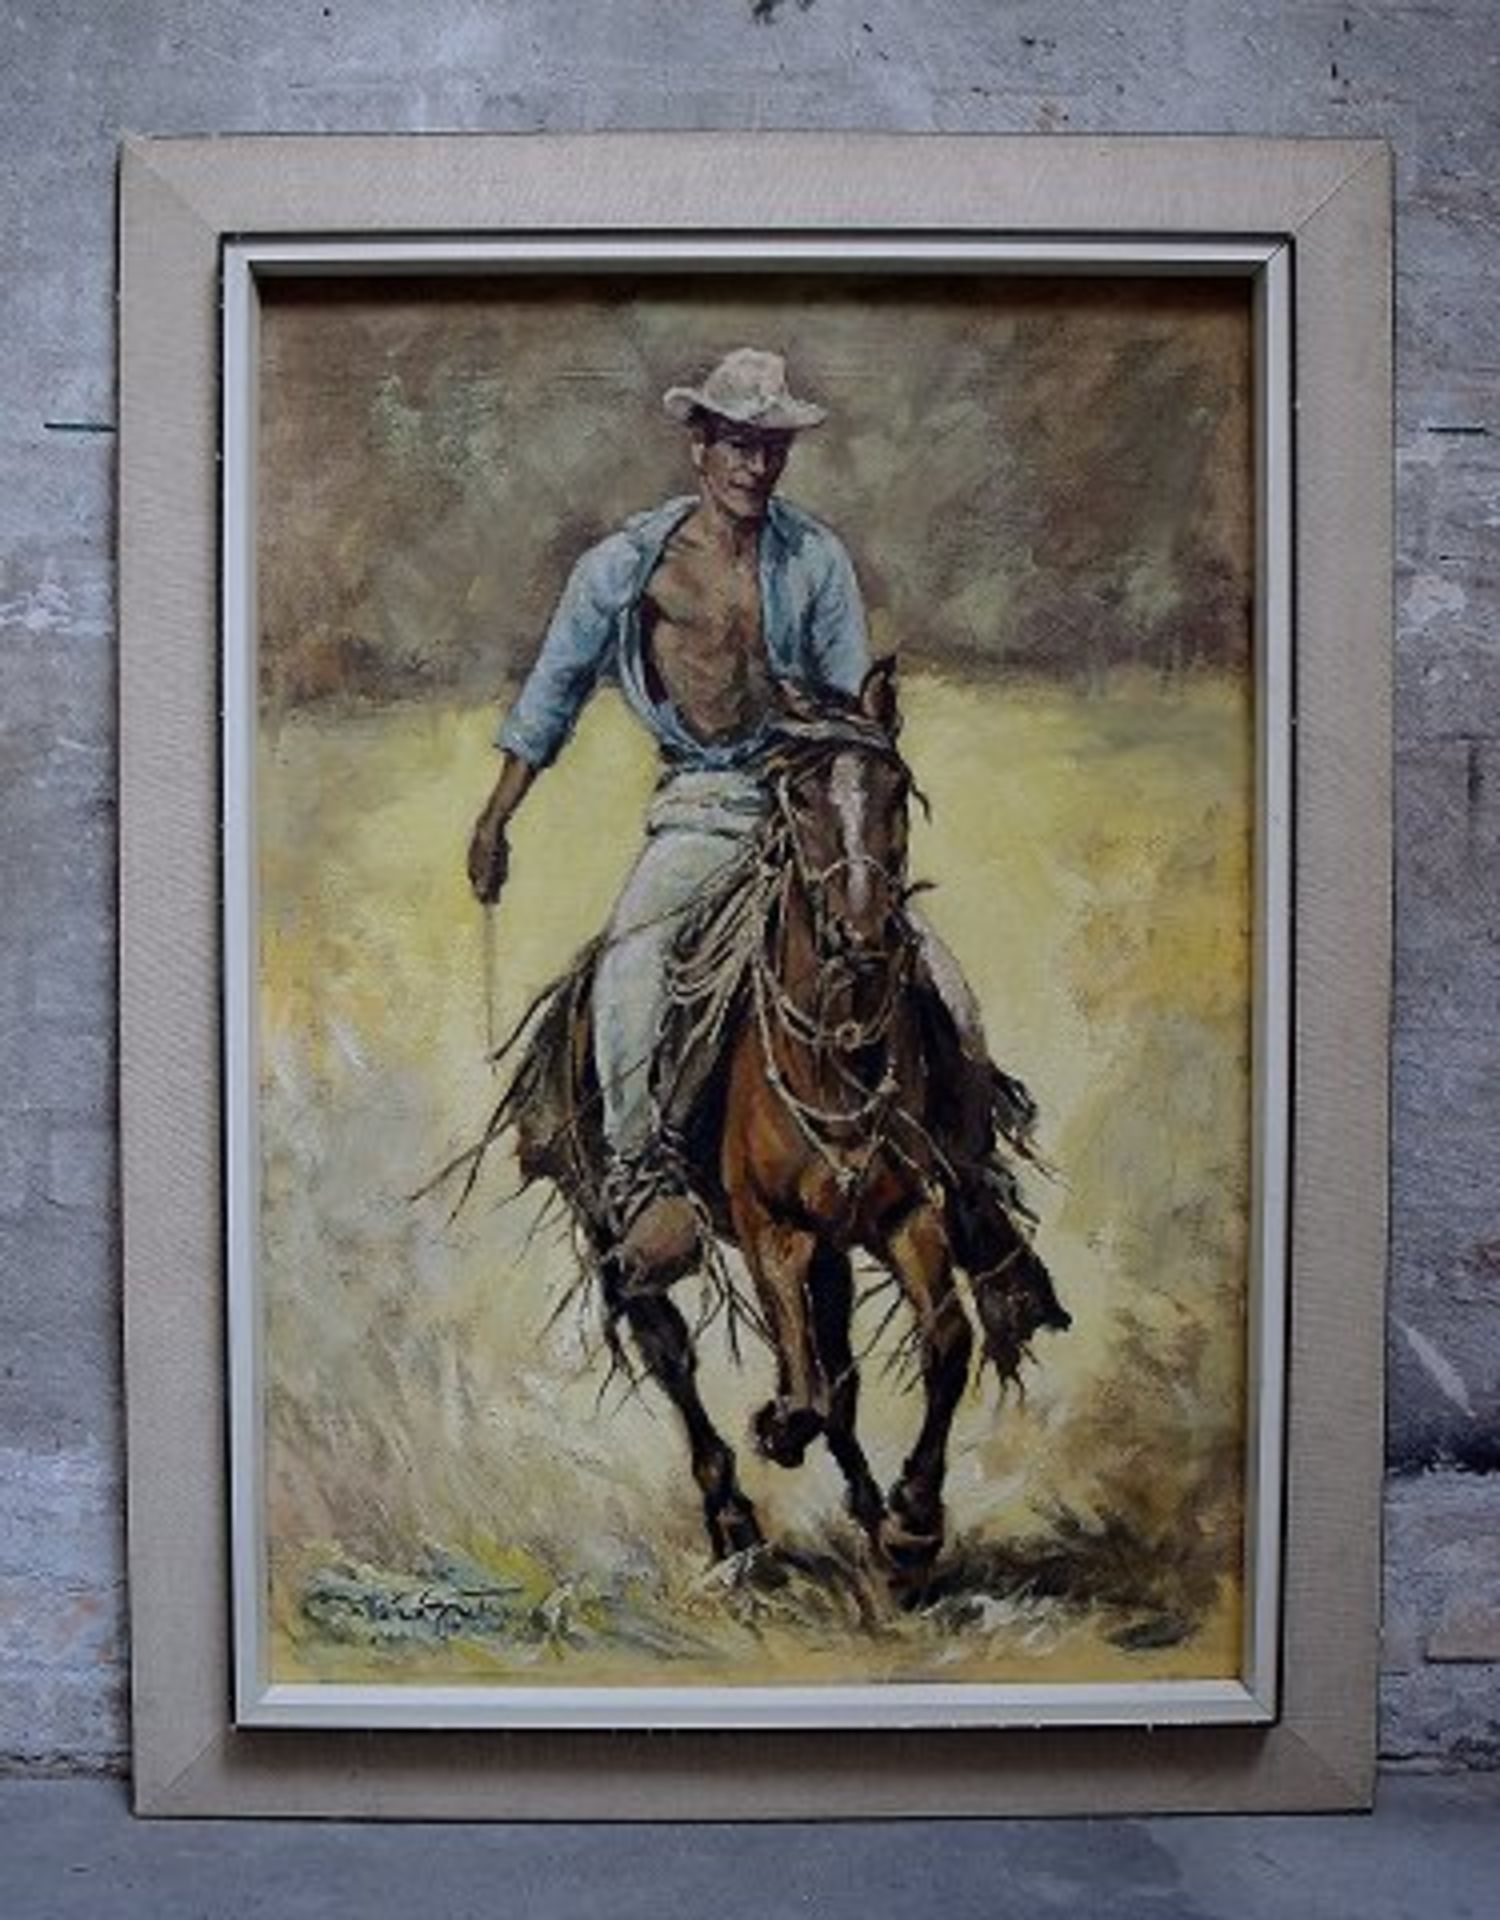 Nichtidentifizierter Künstler. Cowboy, bzw Wildwest Remington Stil. Öl/Lw. Maß ca. 100 x 68 cm.